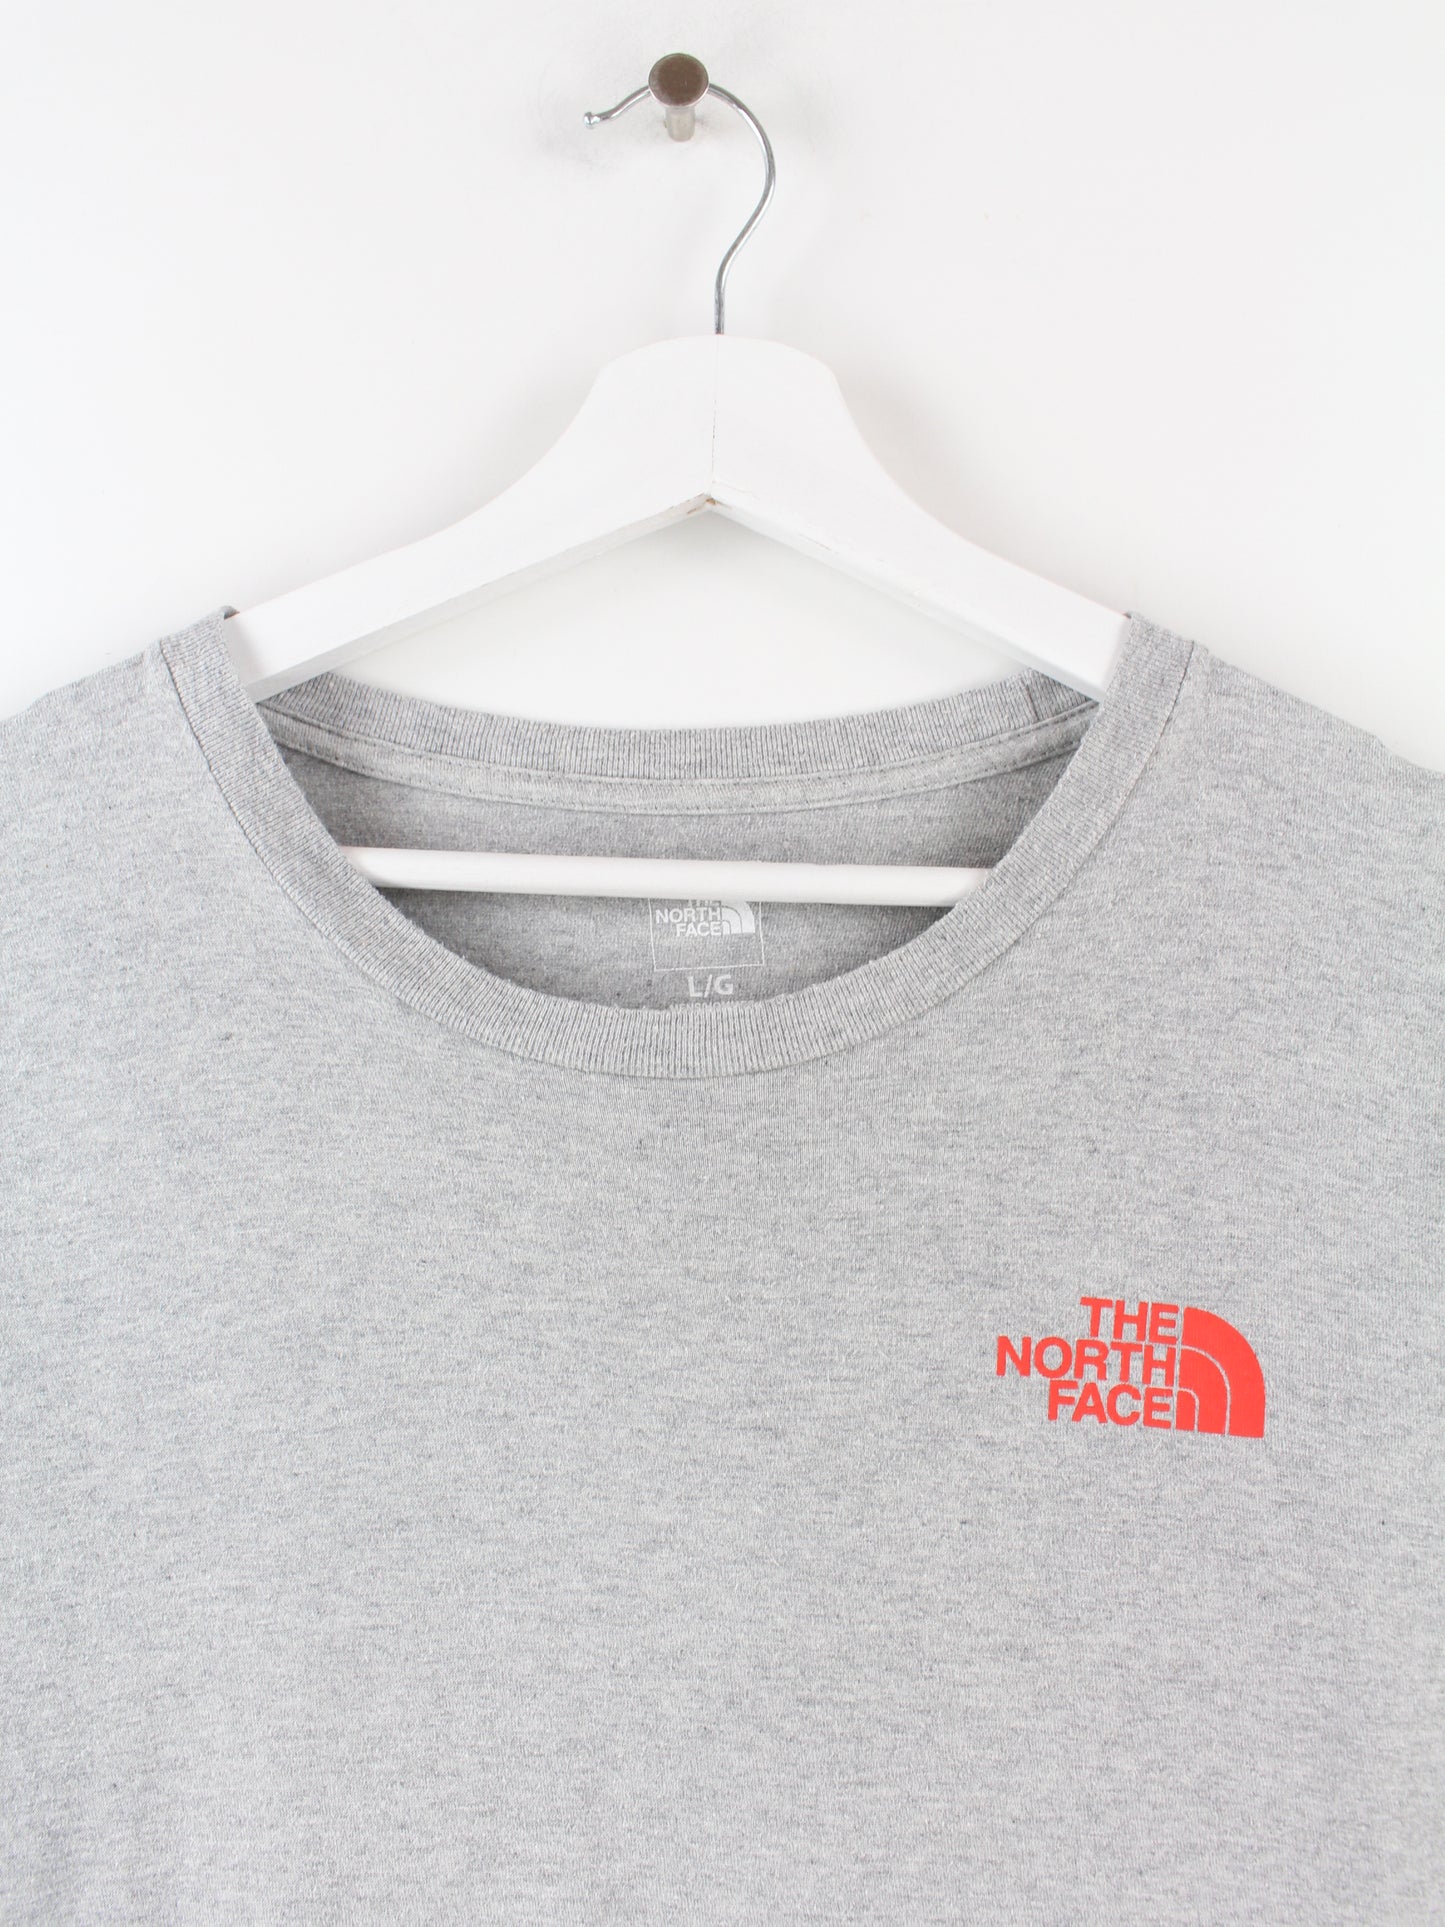 The North Face Print T-Shirt Grau L